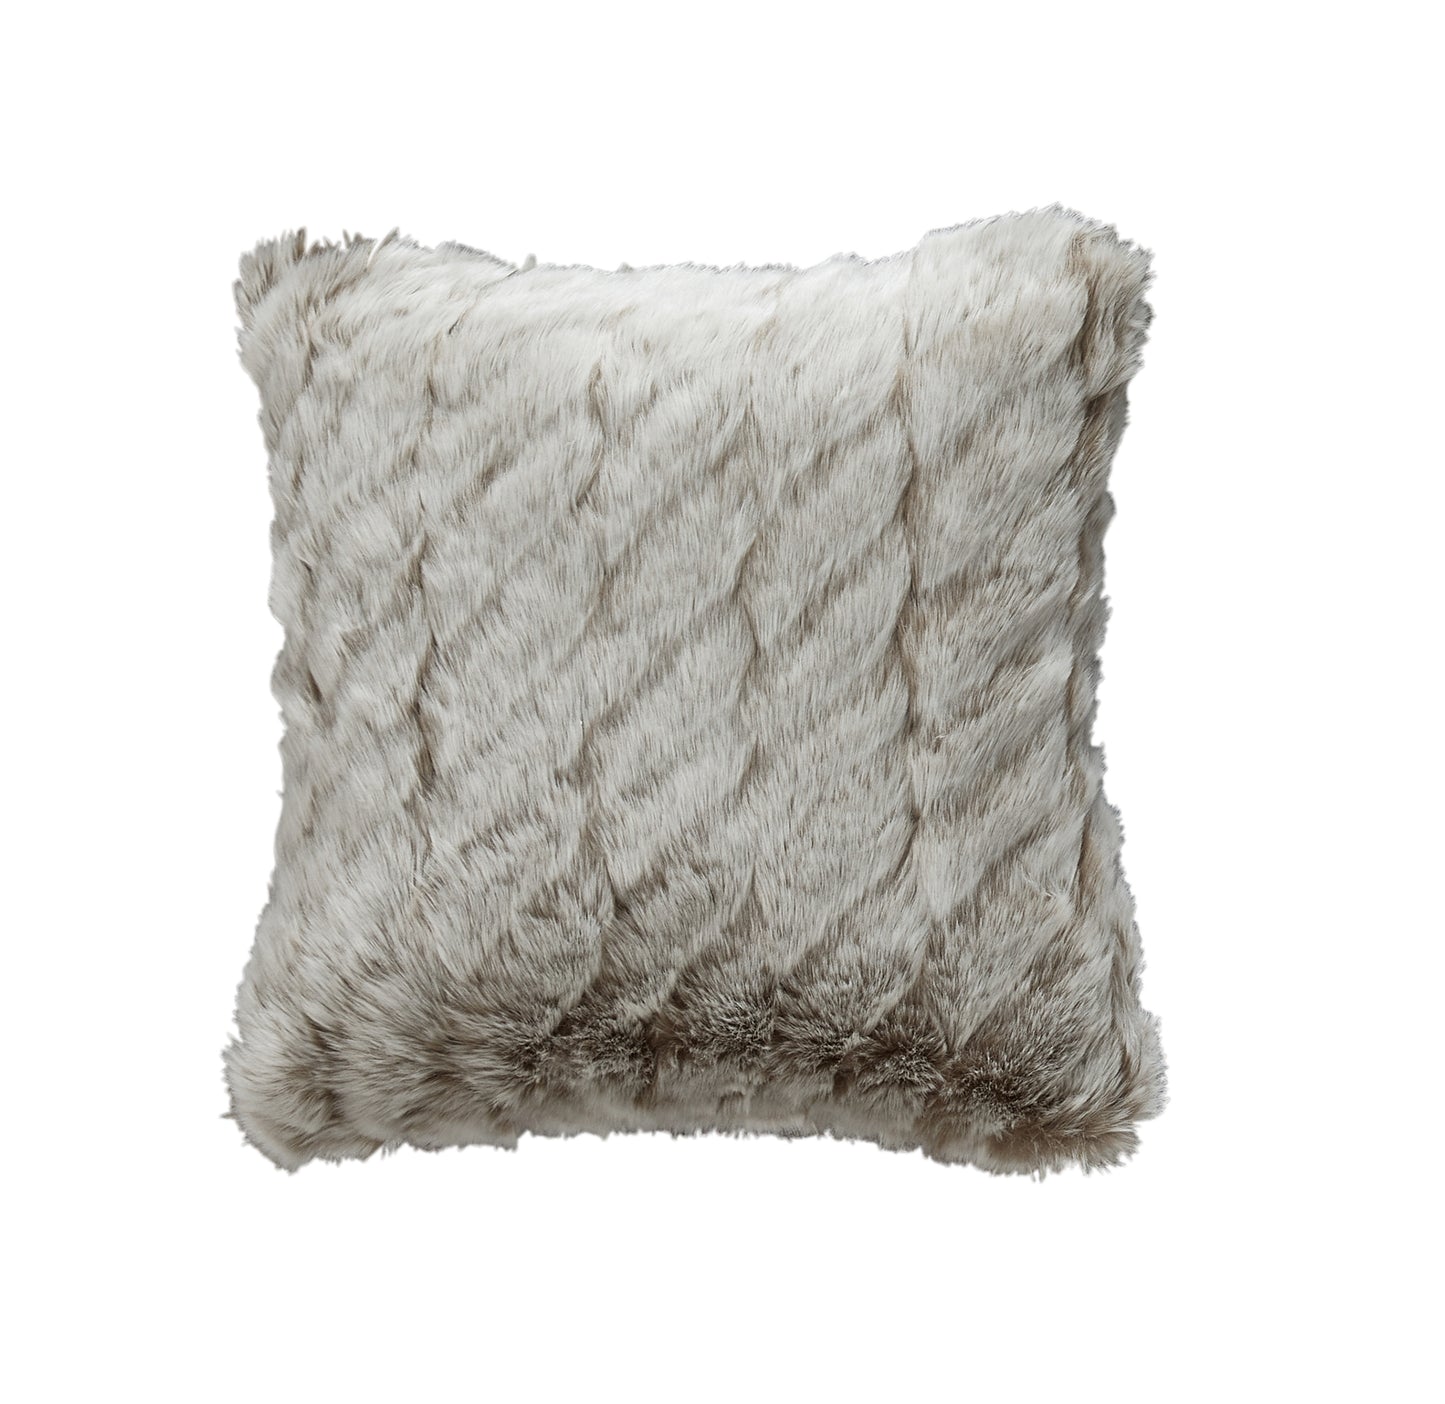 ALL SALES FINAL Michael Aram Faux Fur Decorative Pillow